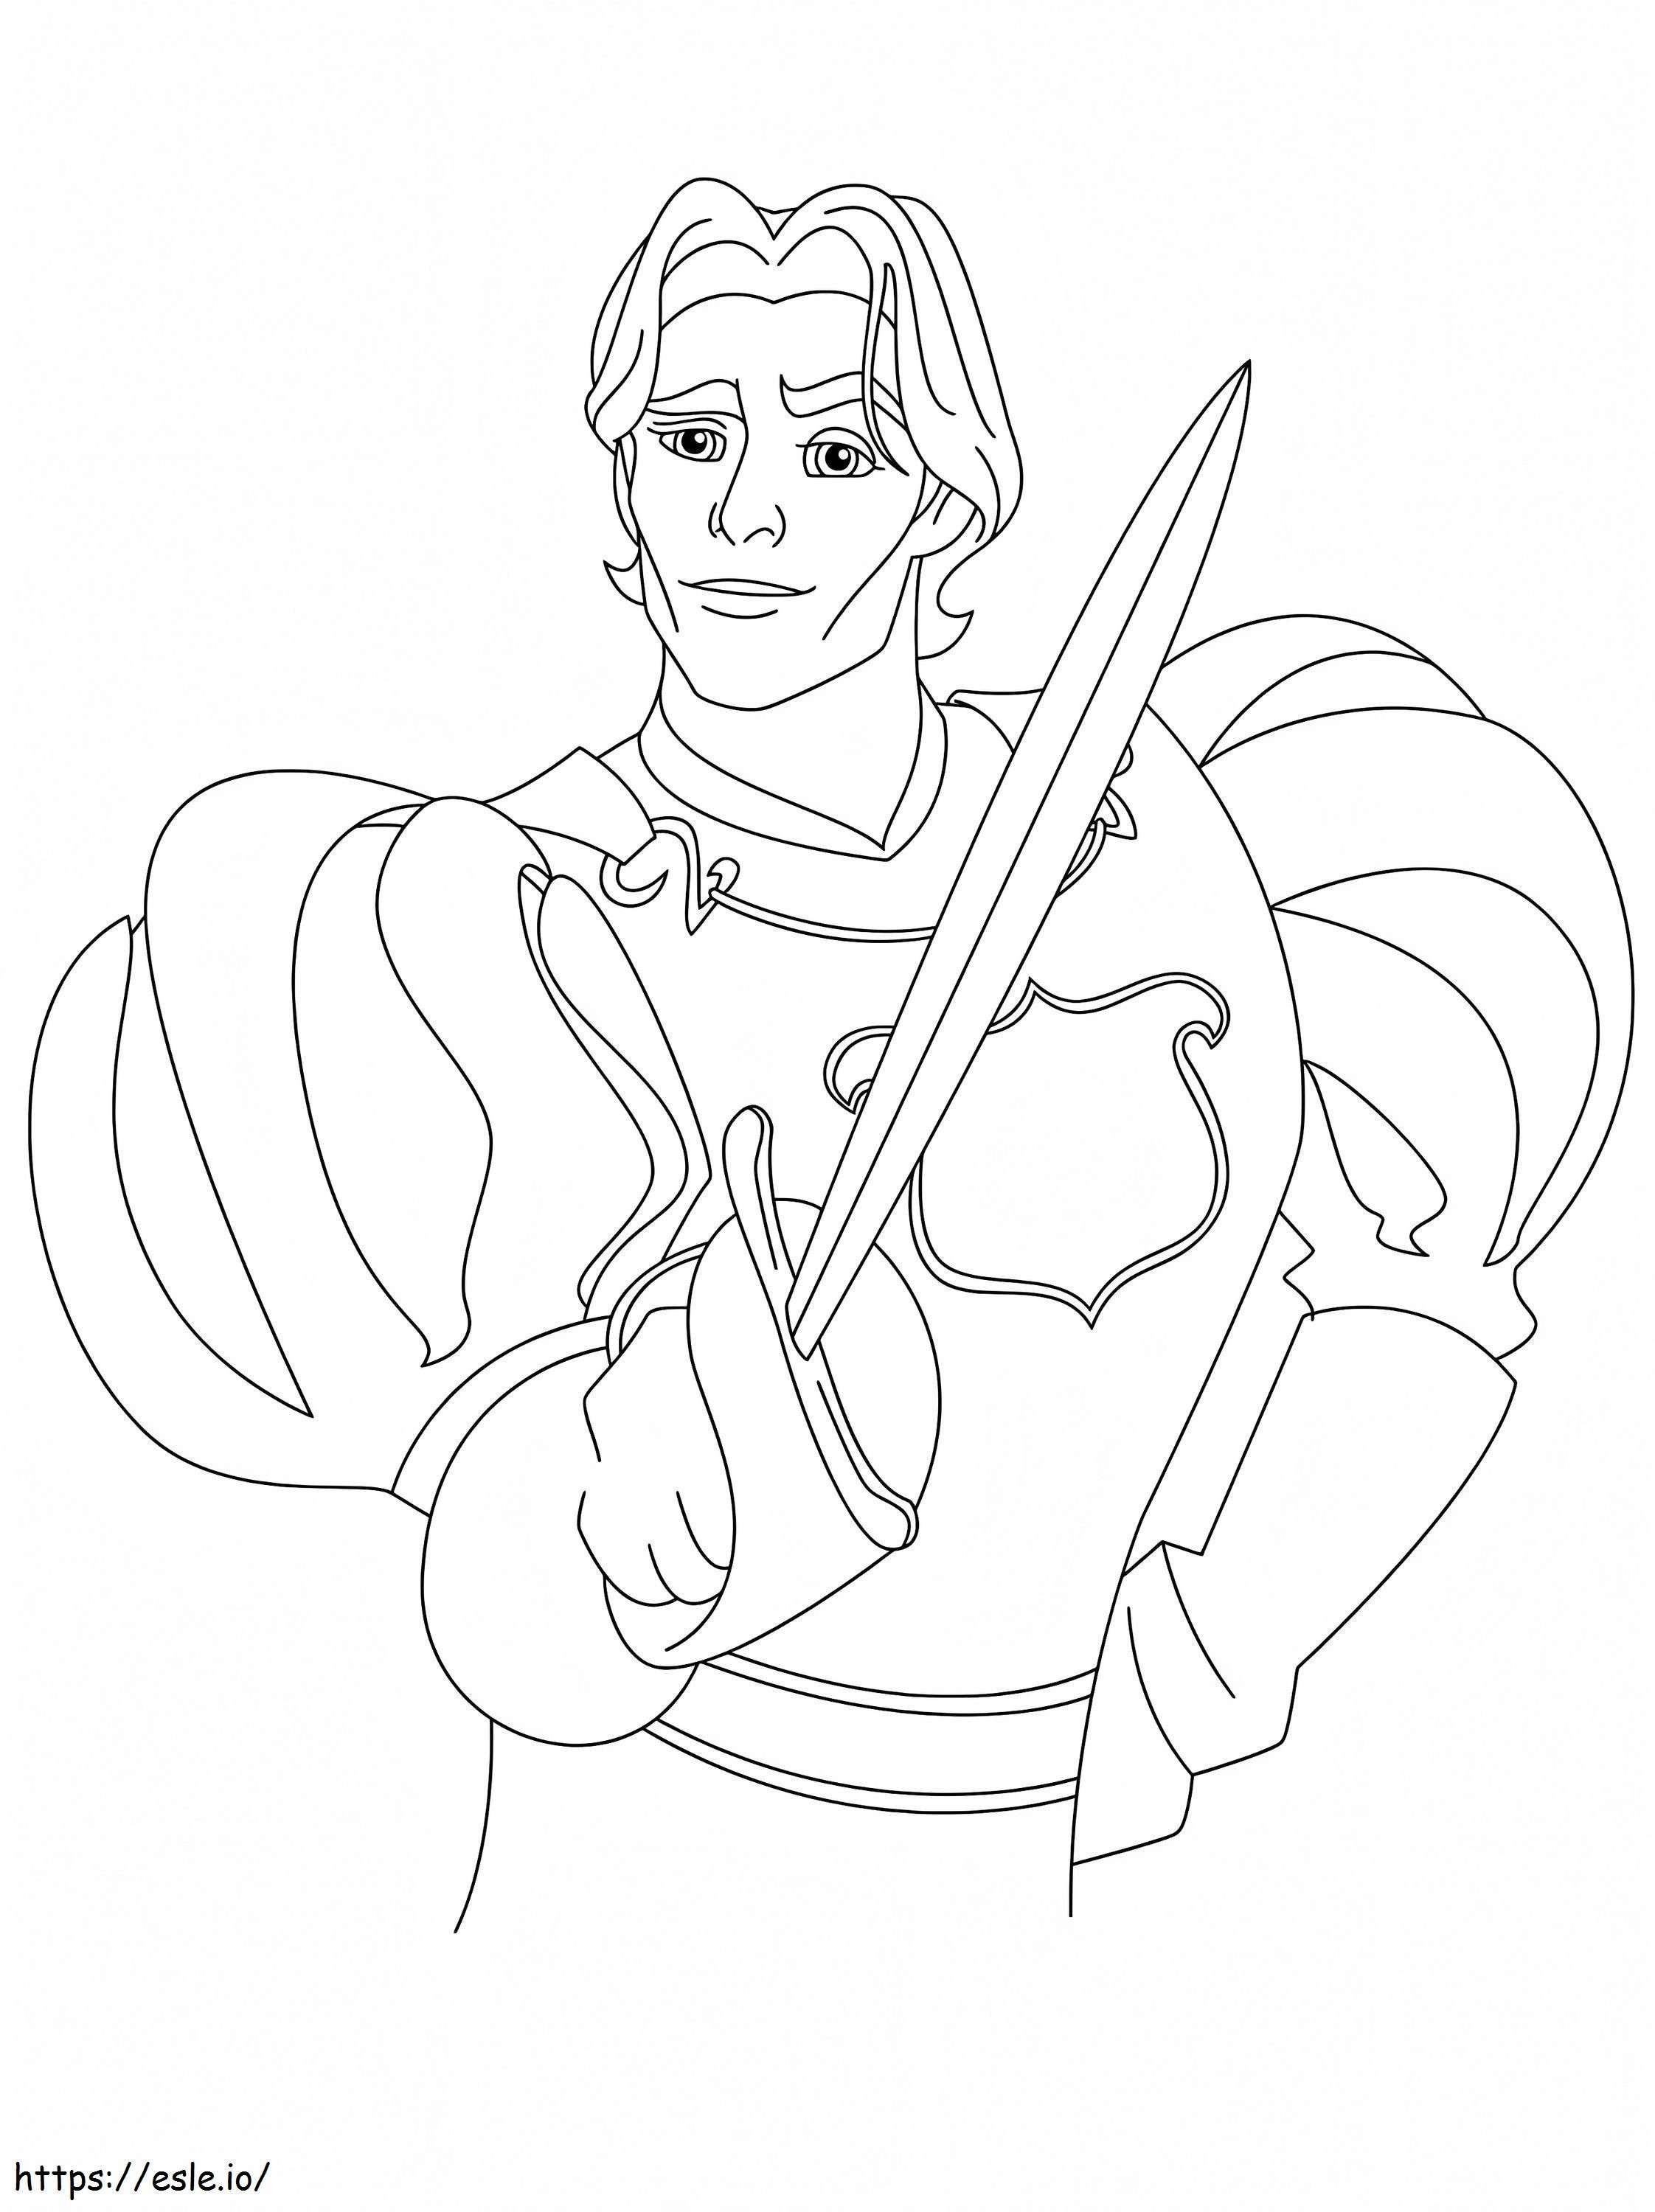 Prințul Edward cu sabia lui de colorat